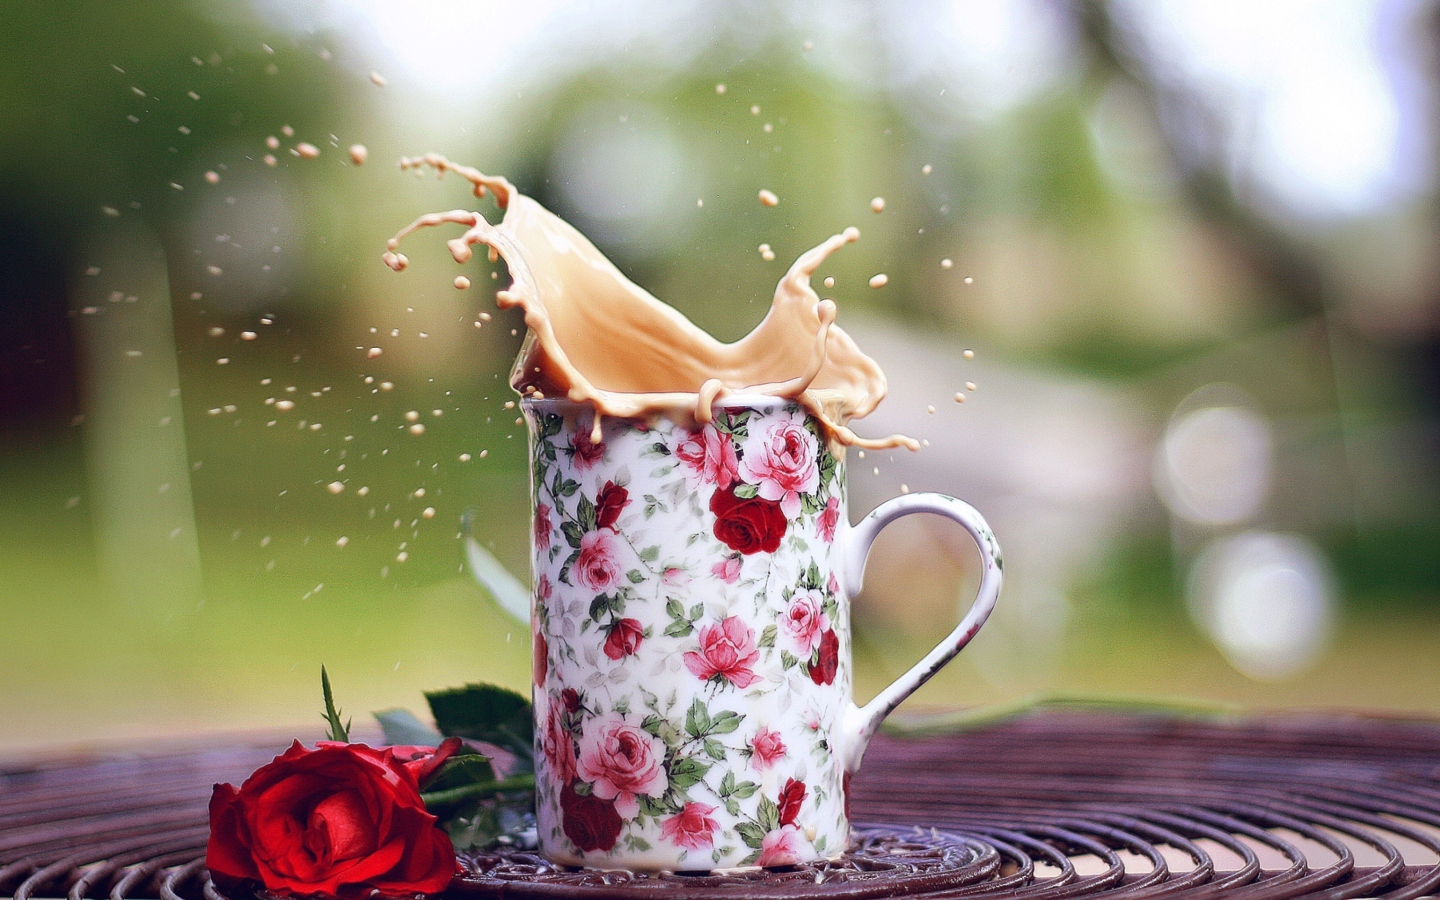 Обои Coffee With Milk In Flower Mug 1440x900